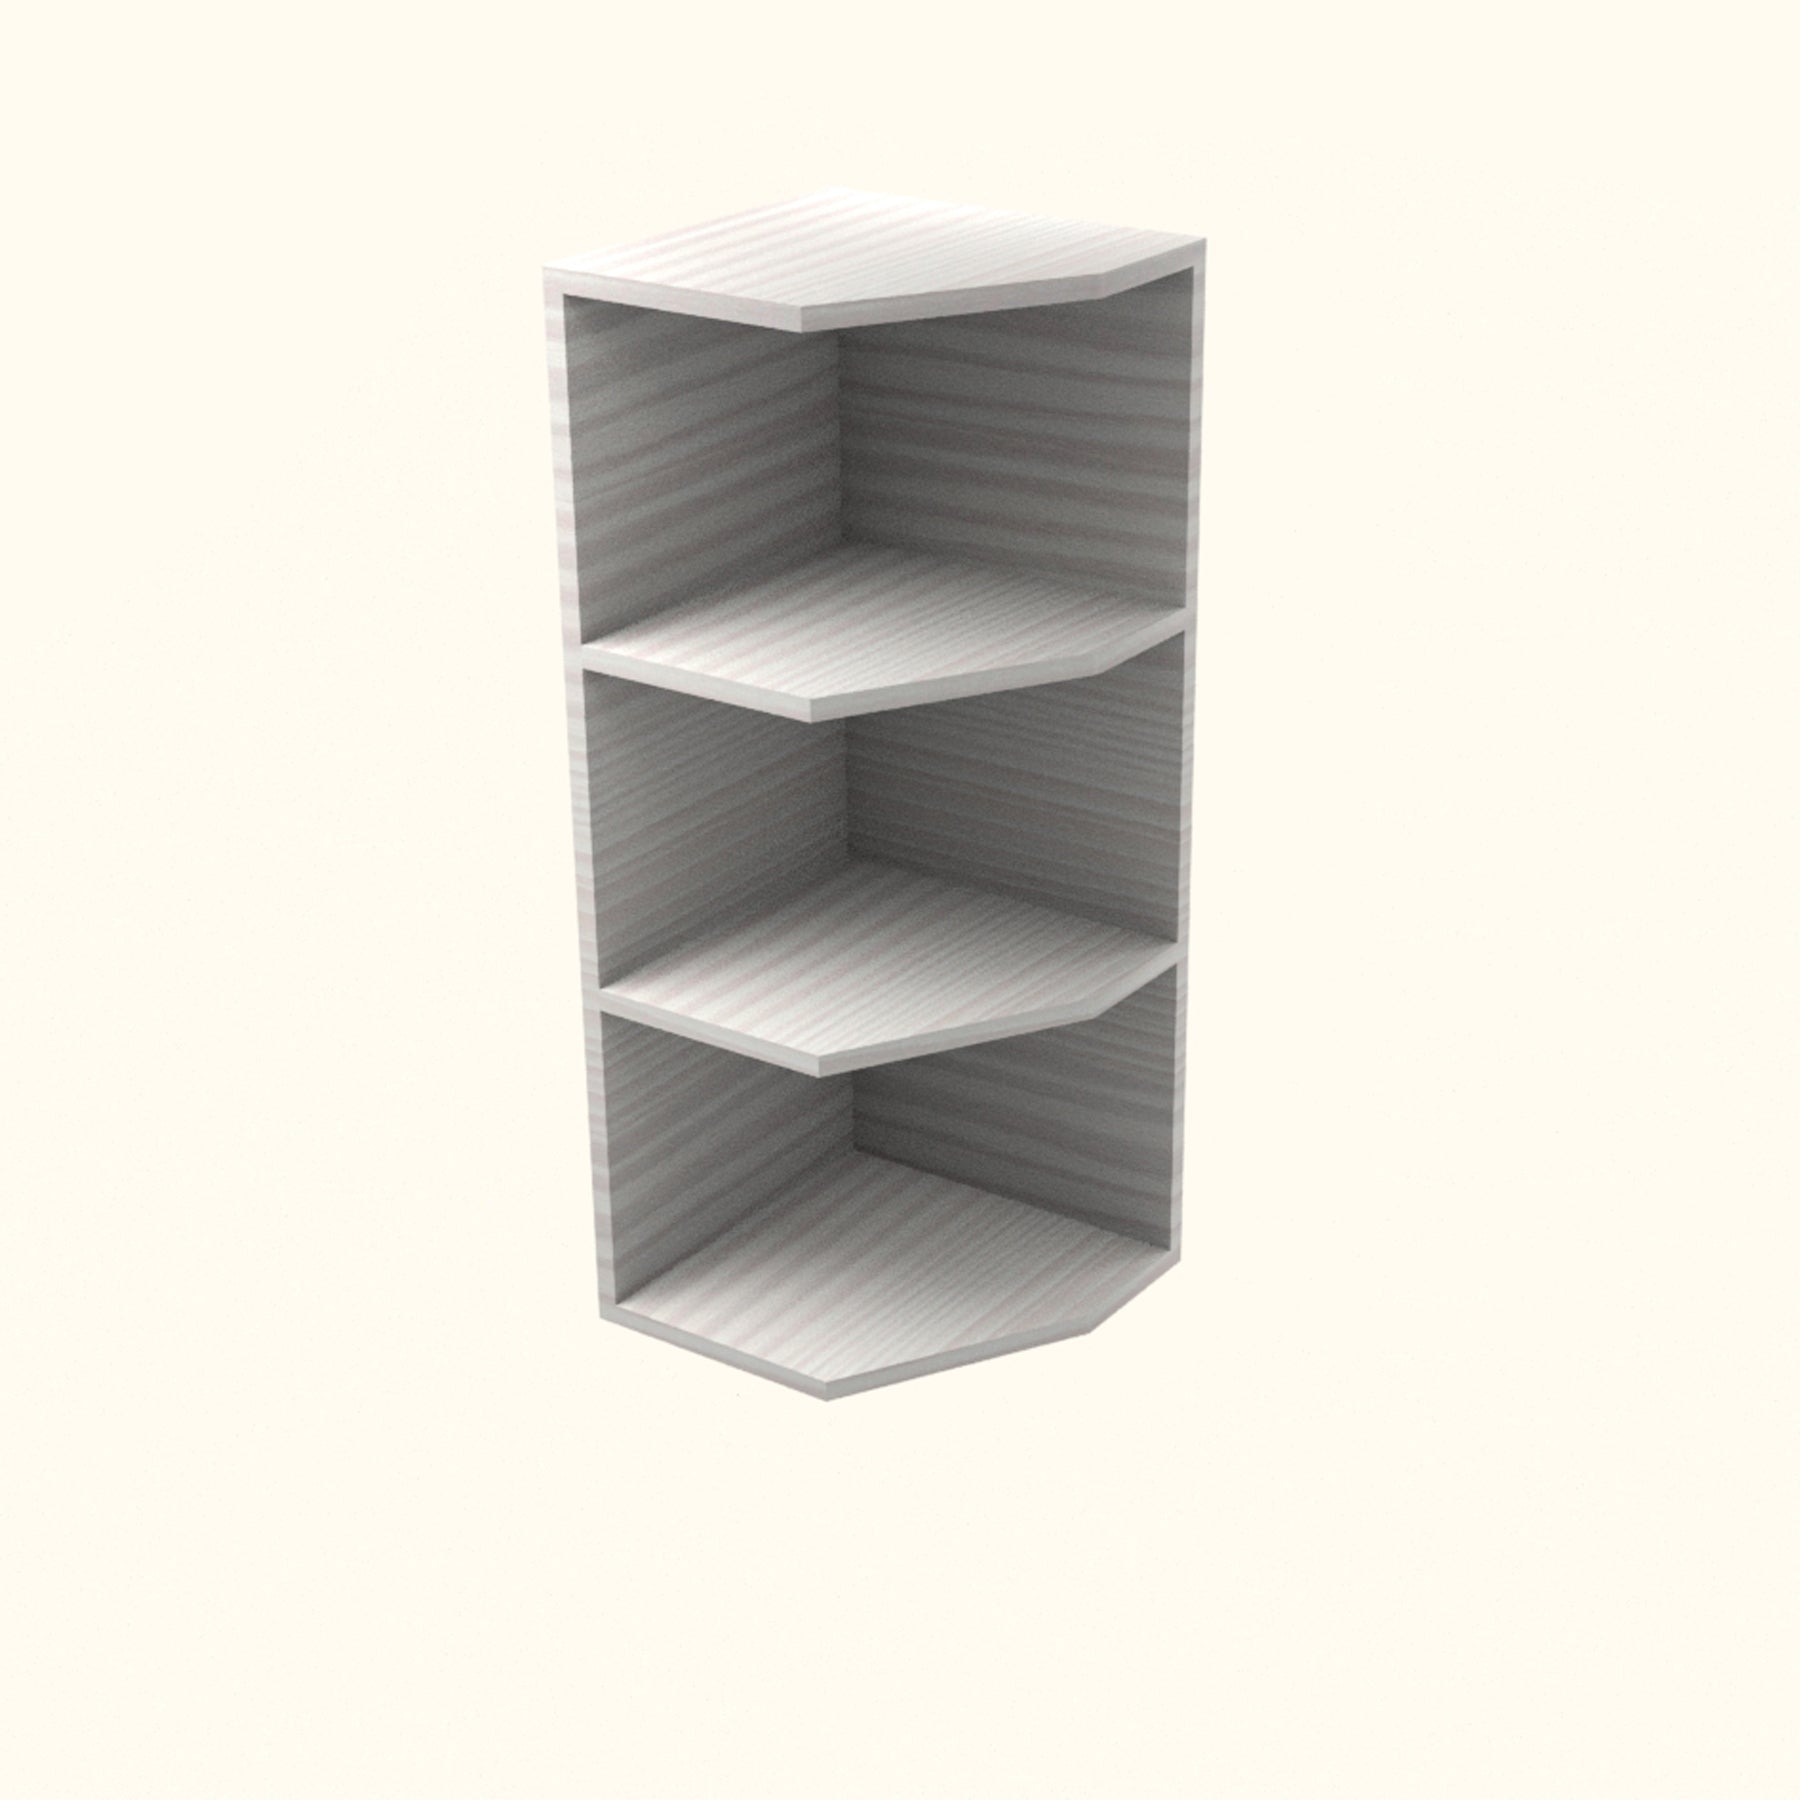 RTA - Pale Pine - End Wall Shelf Base Cabinets | 12"W x 30"H x 12"D